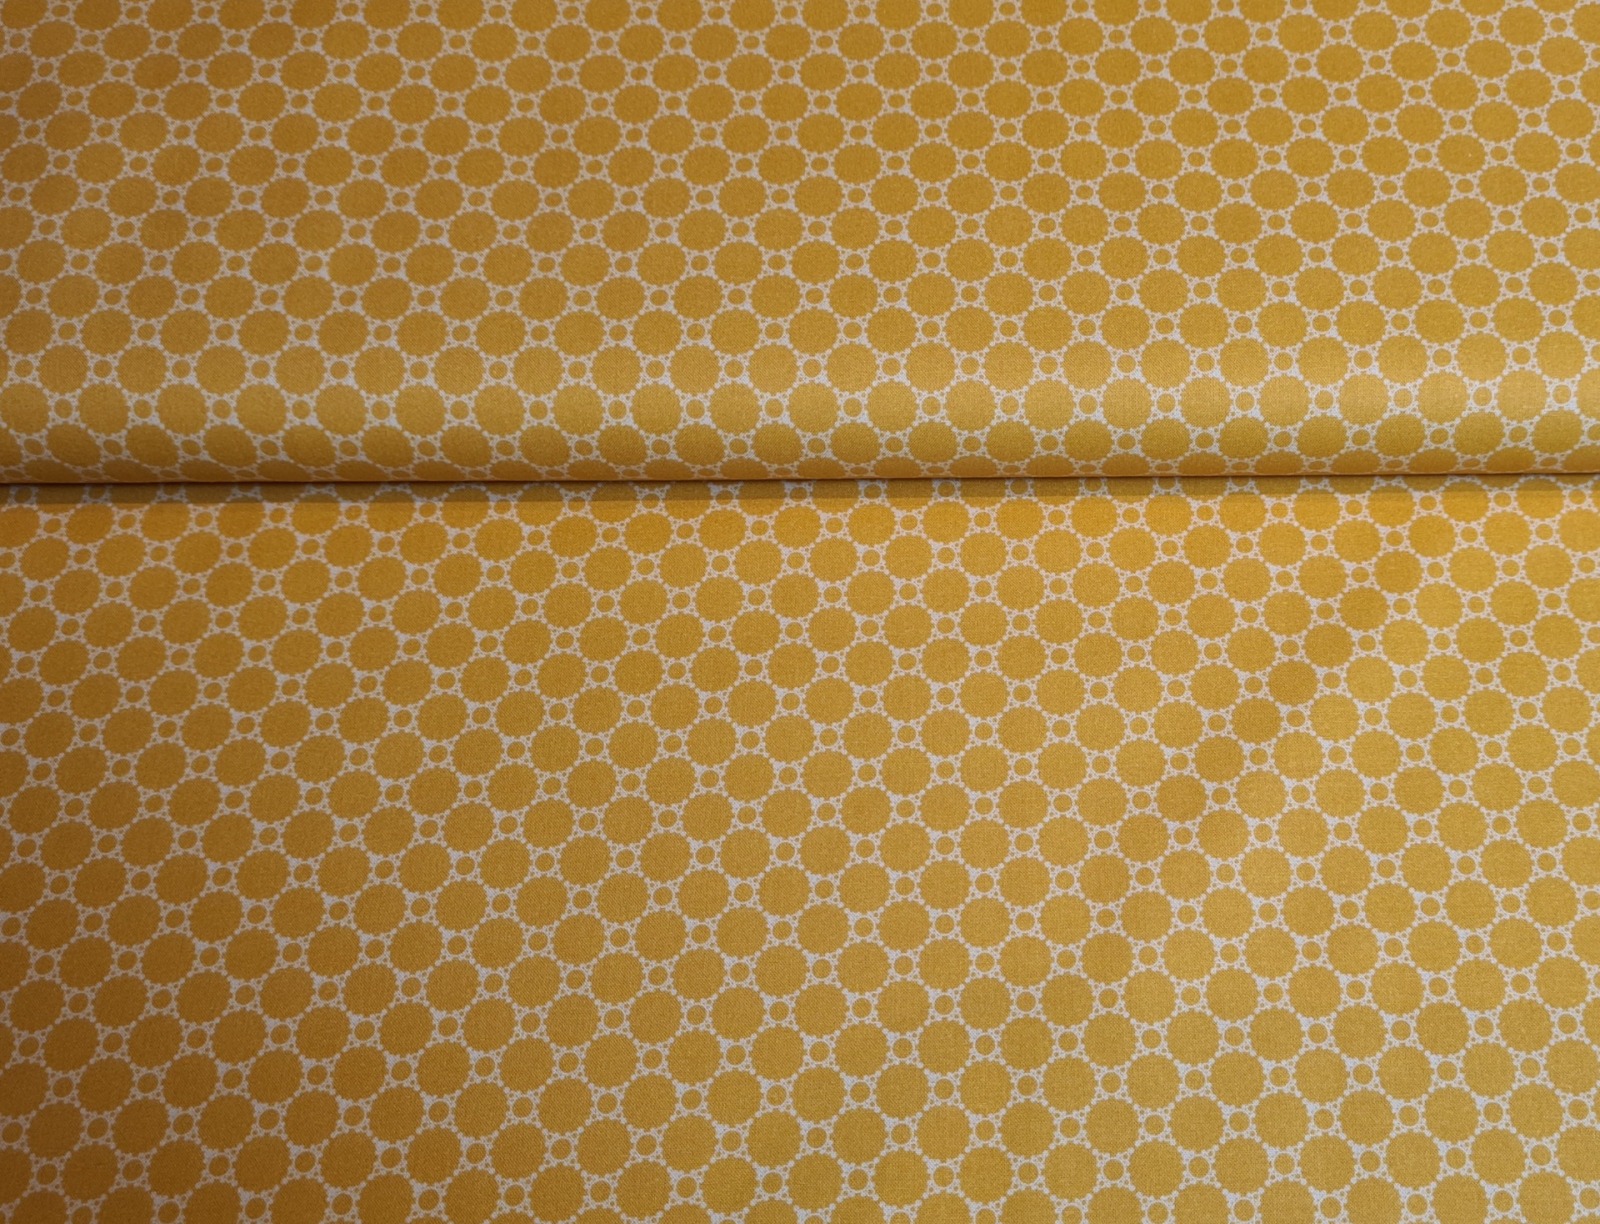 Studio Fabrics Lace Baumwollstoff Punkte Dots 2